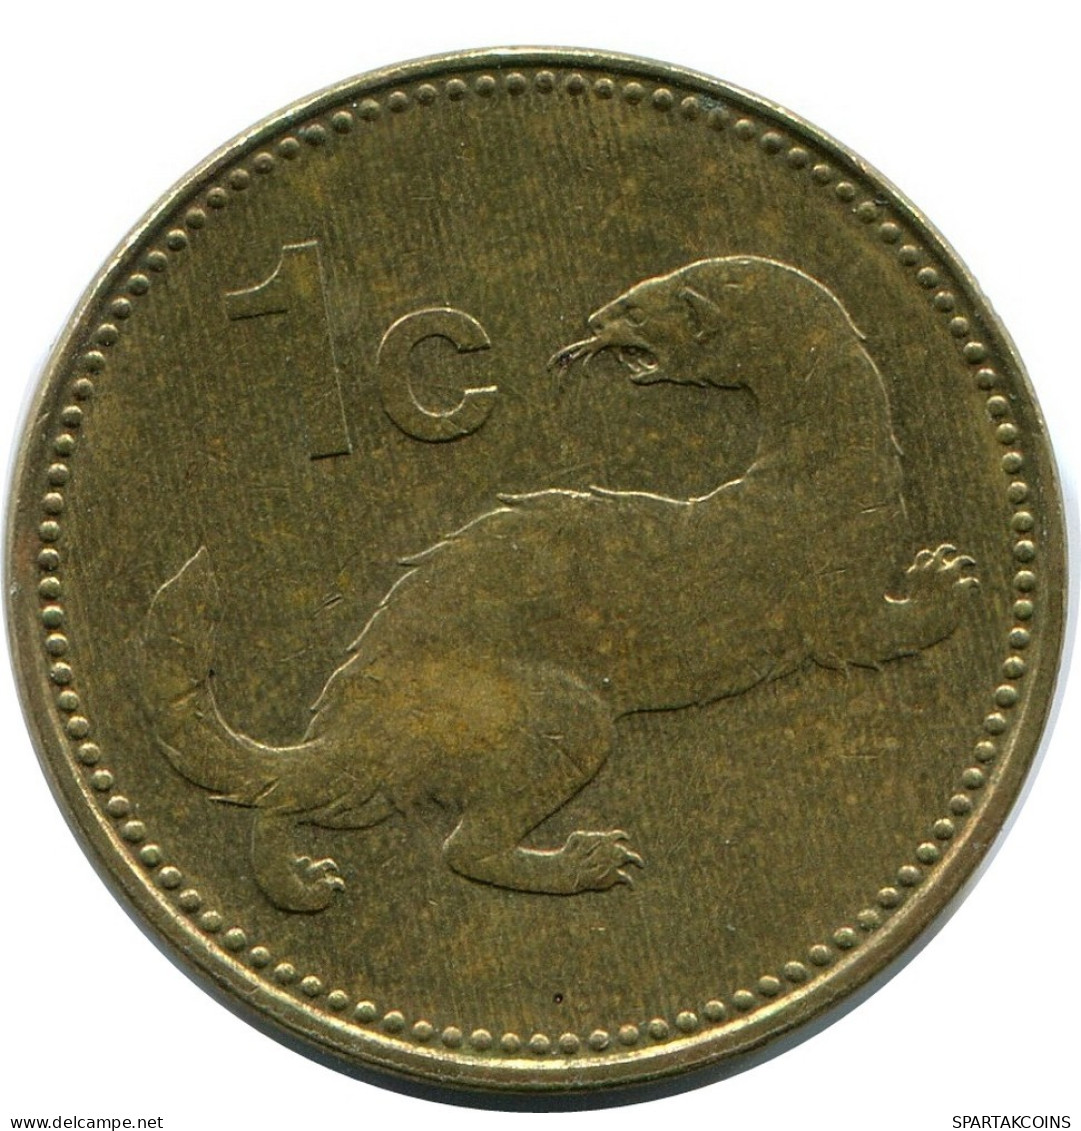 1 CENT 1986 MALTA Coin #AZ307.U.A - Malta